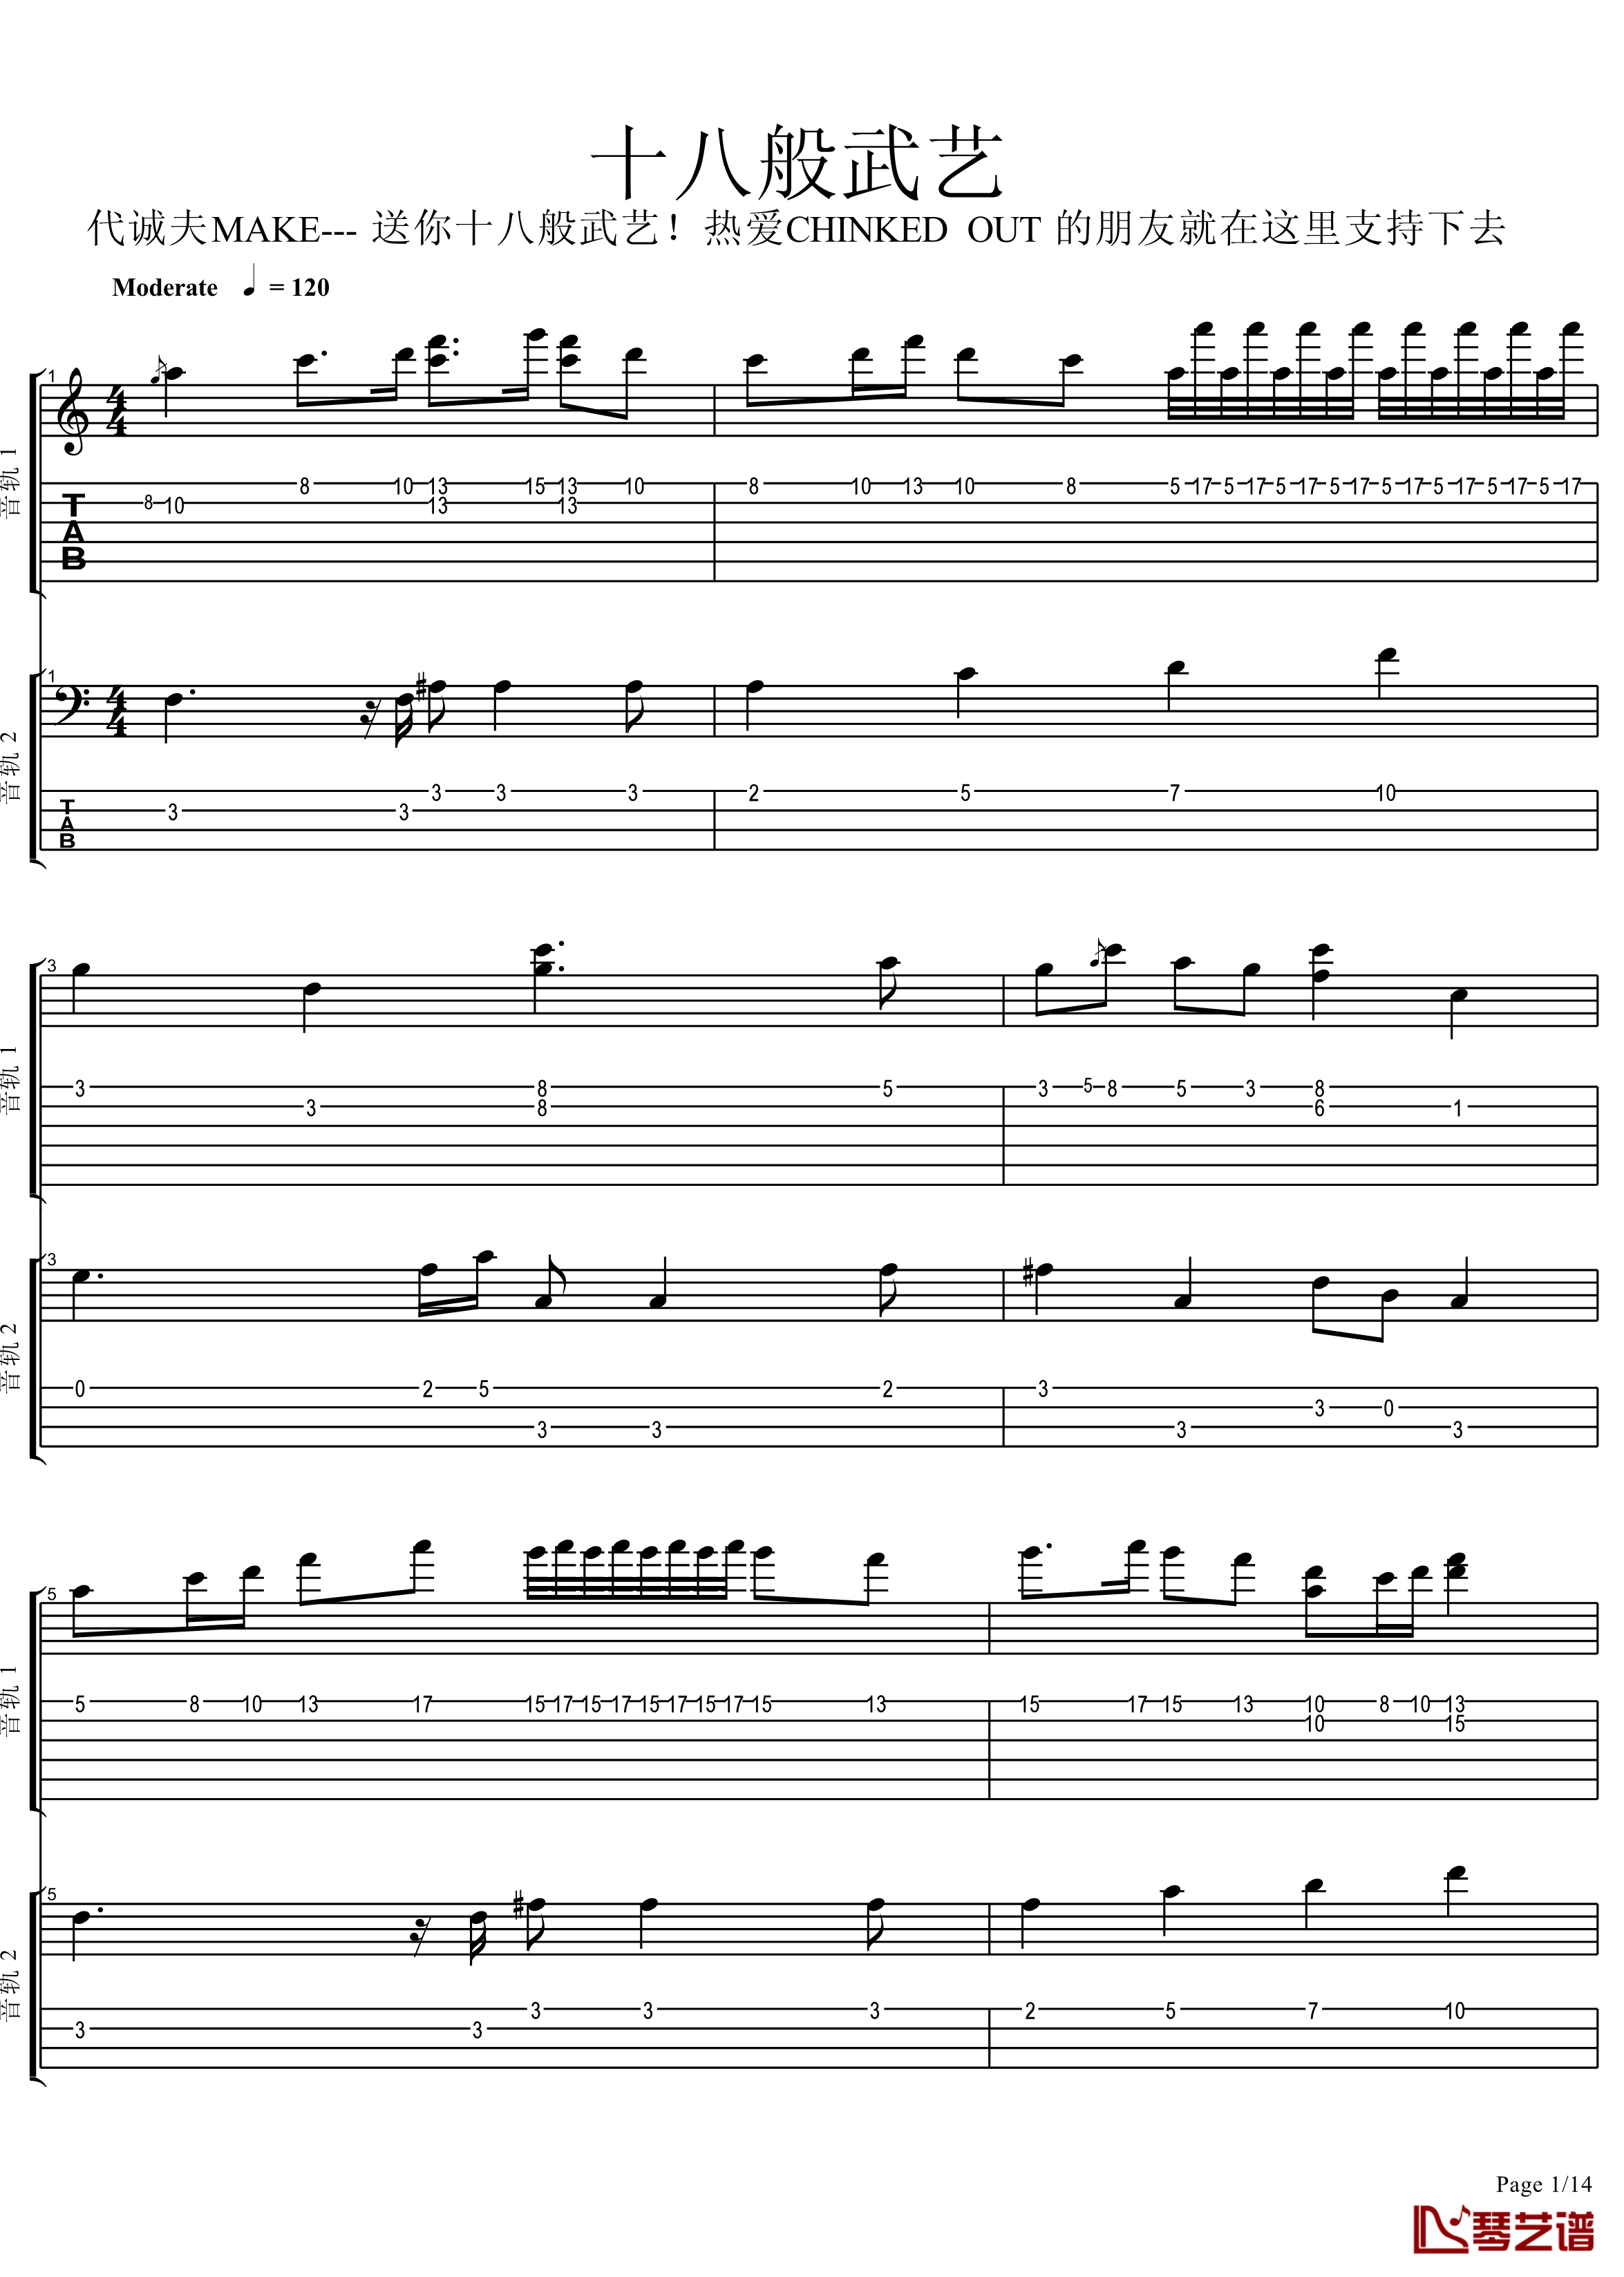 十八般武艺钢琴谱-完美演奏版-王力宏1